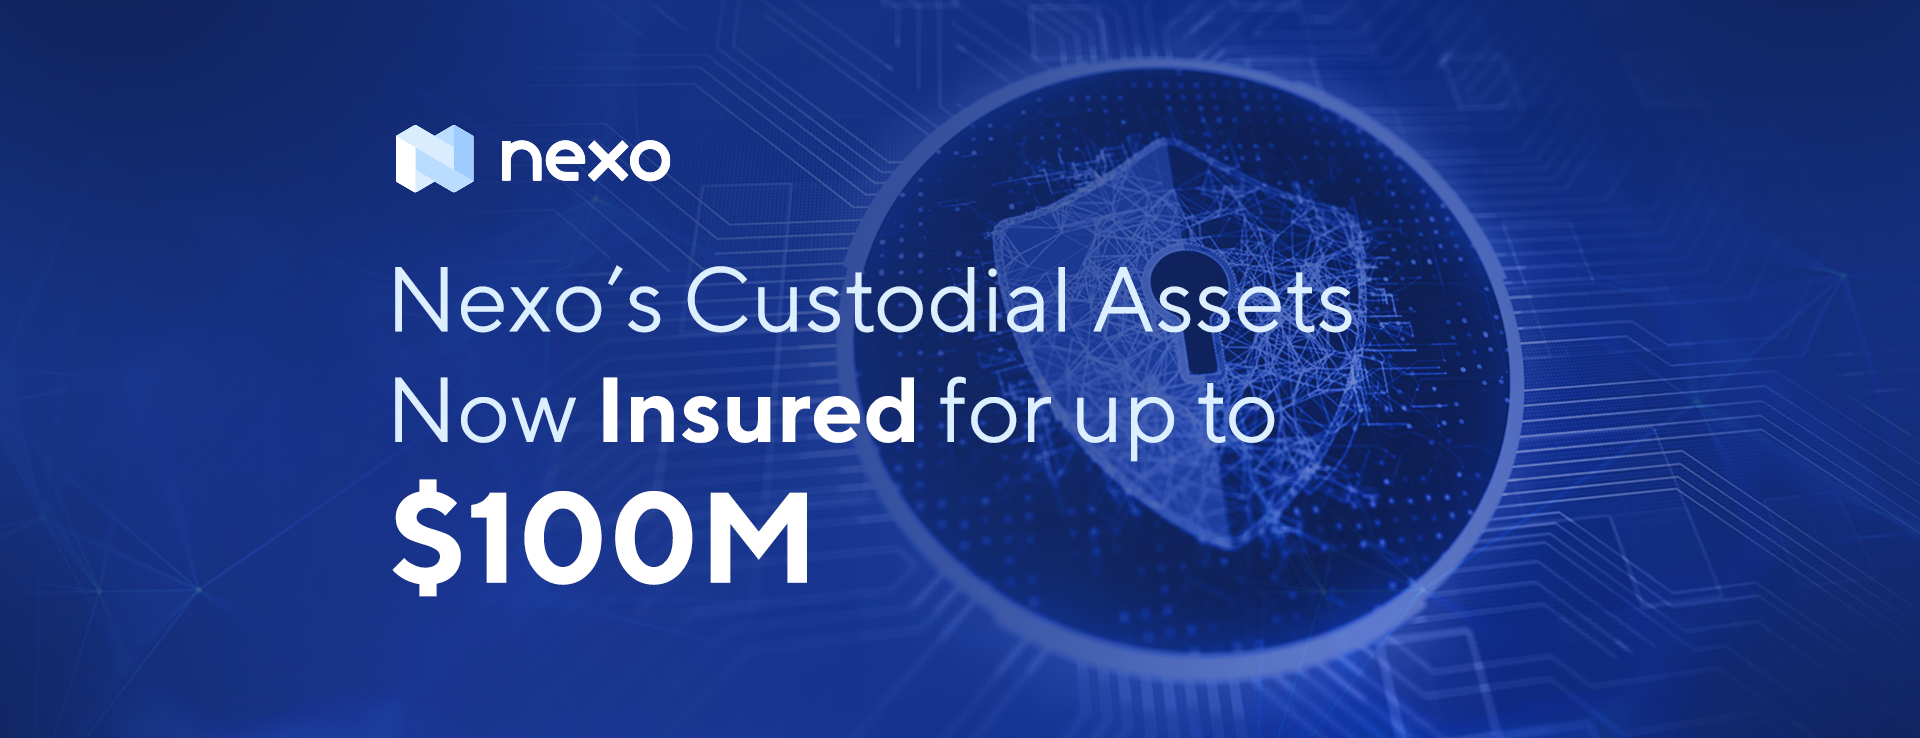 Nexo’s Custodial Assets Now Insured for $100M